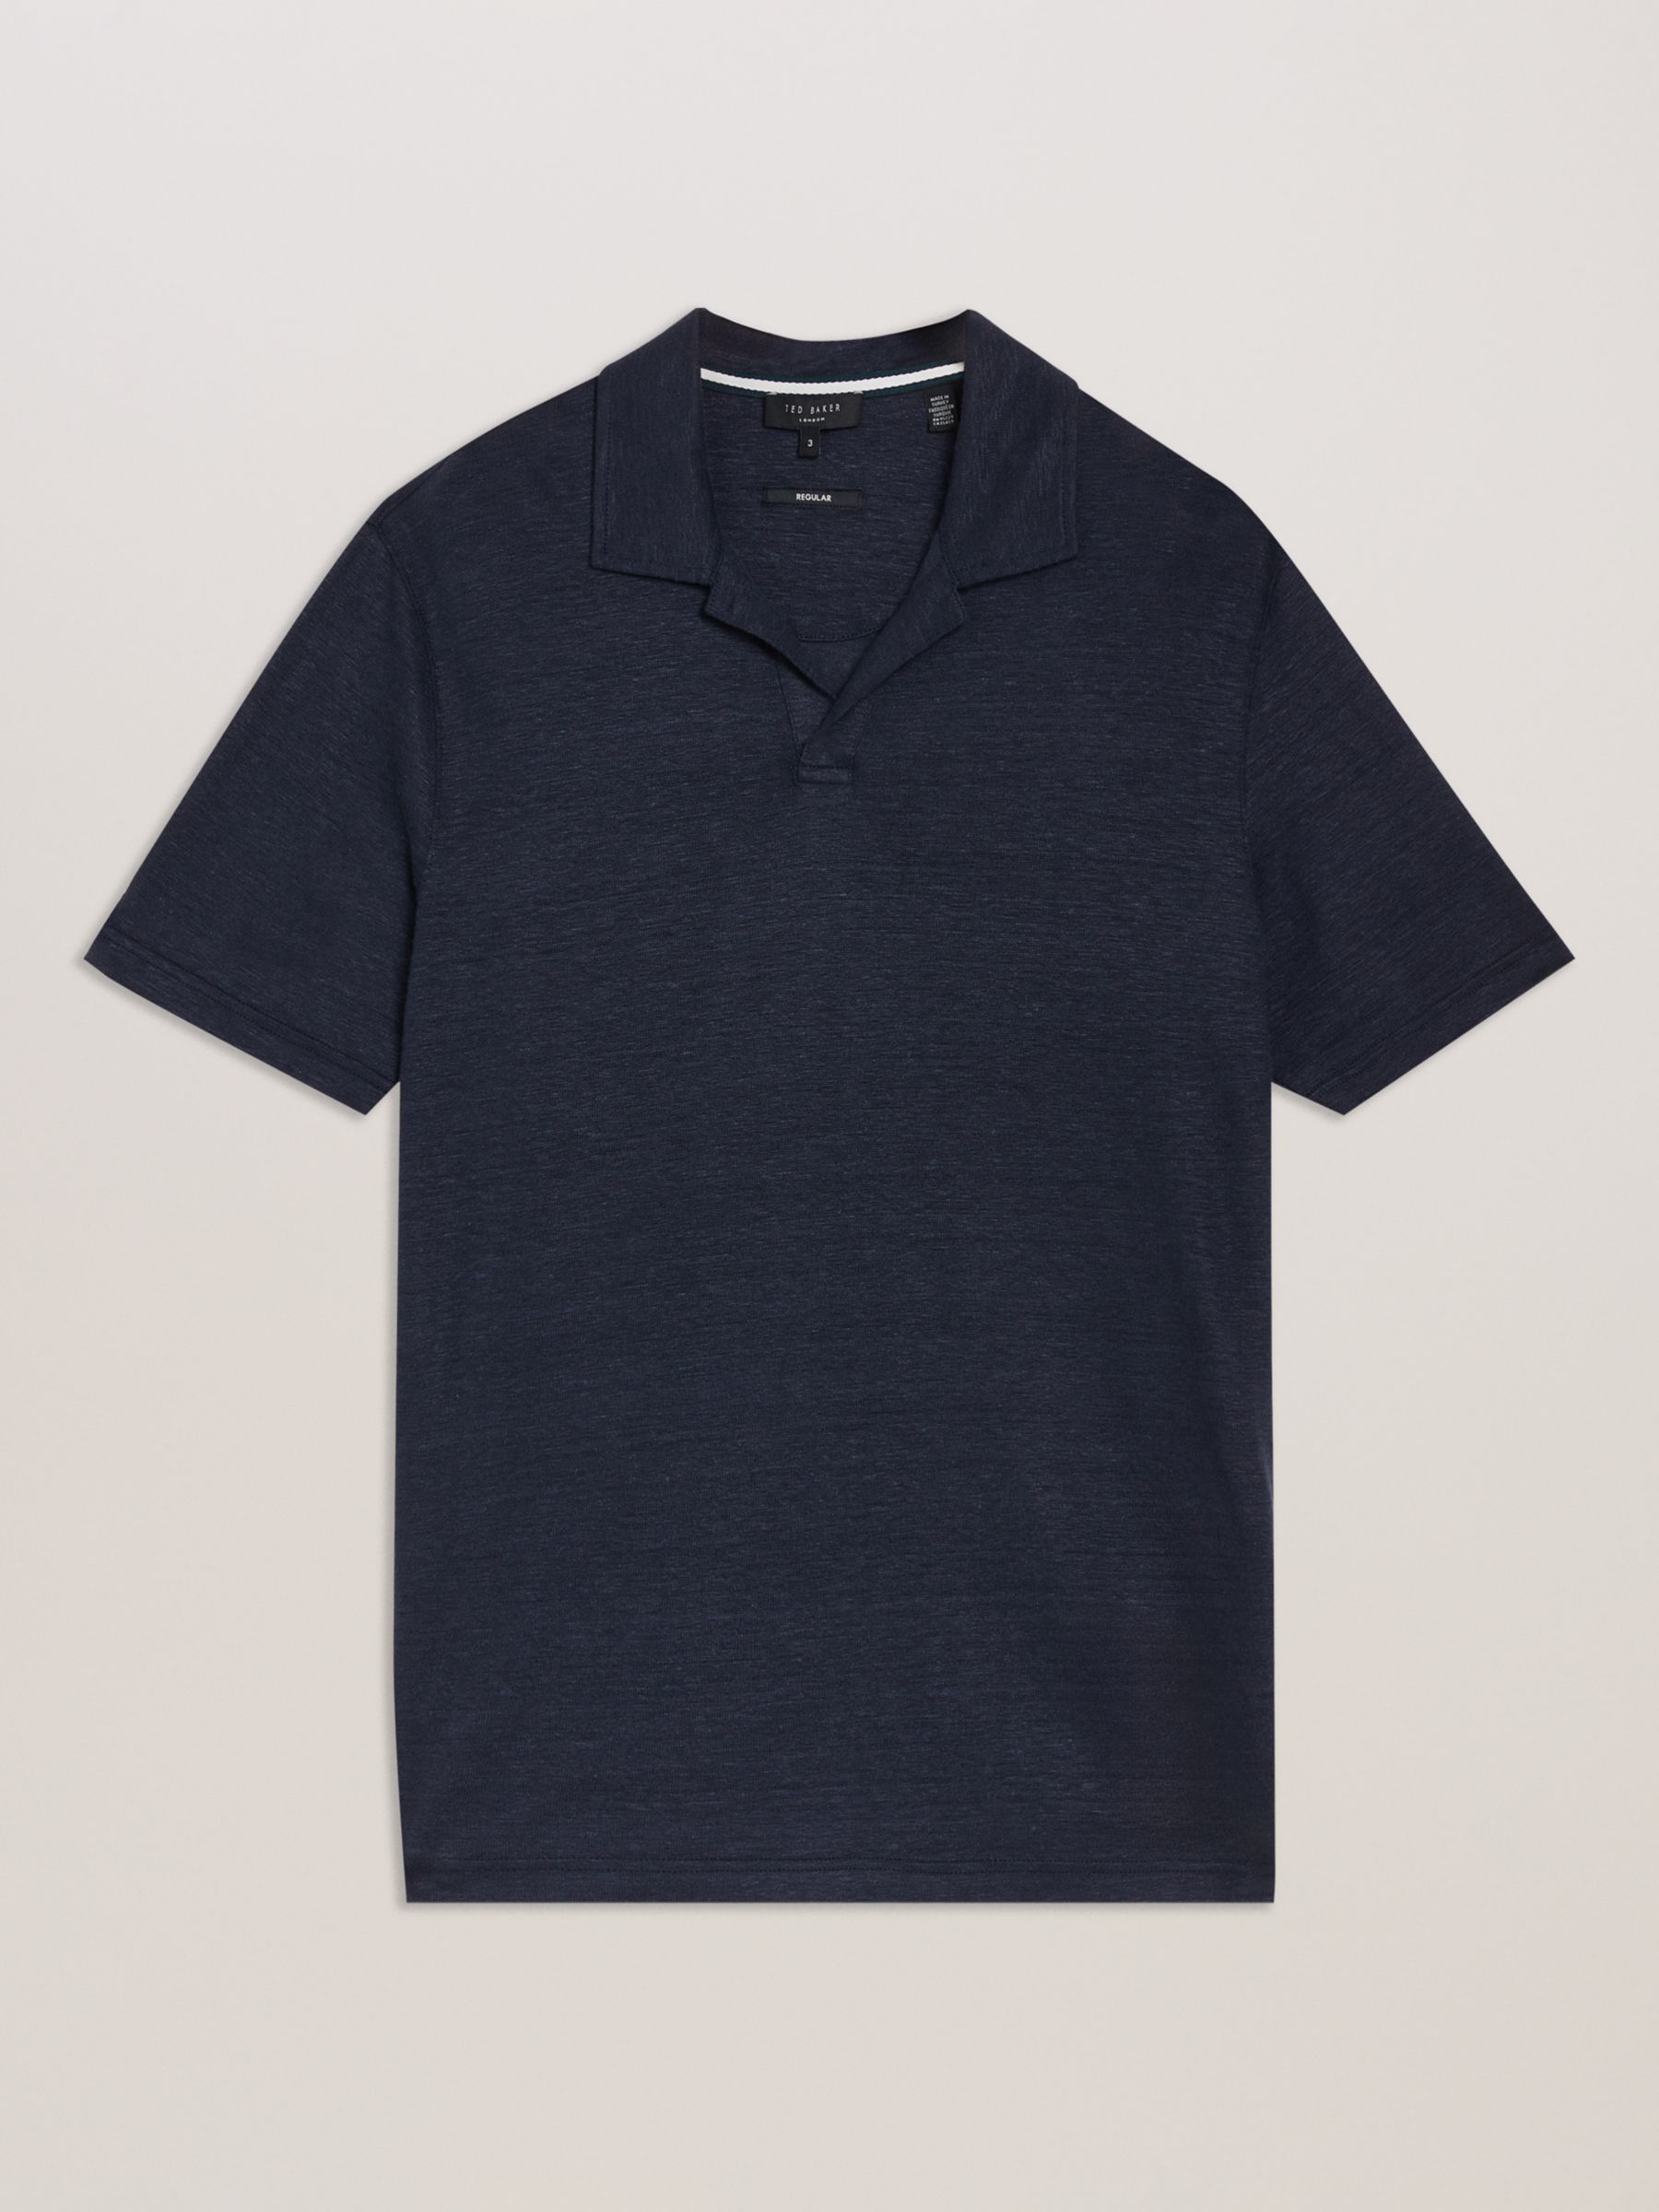 Ted Baker Flinpo Short Sleeve Regular Linen Polo Shirt, Blue Navy, S